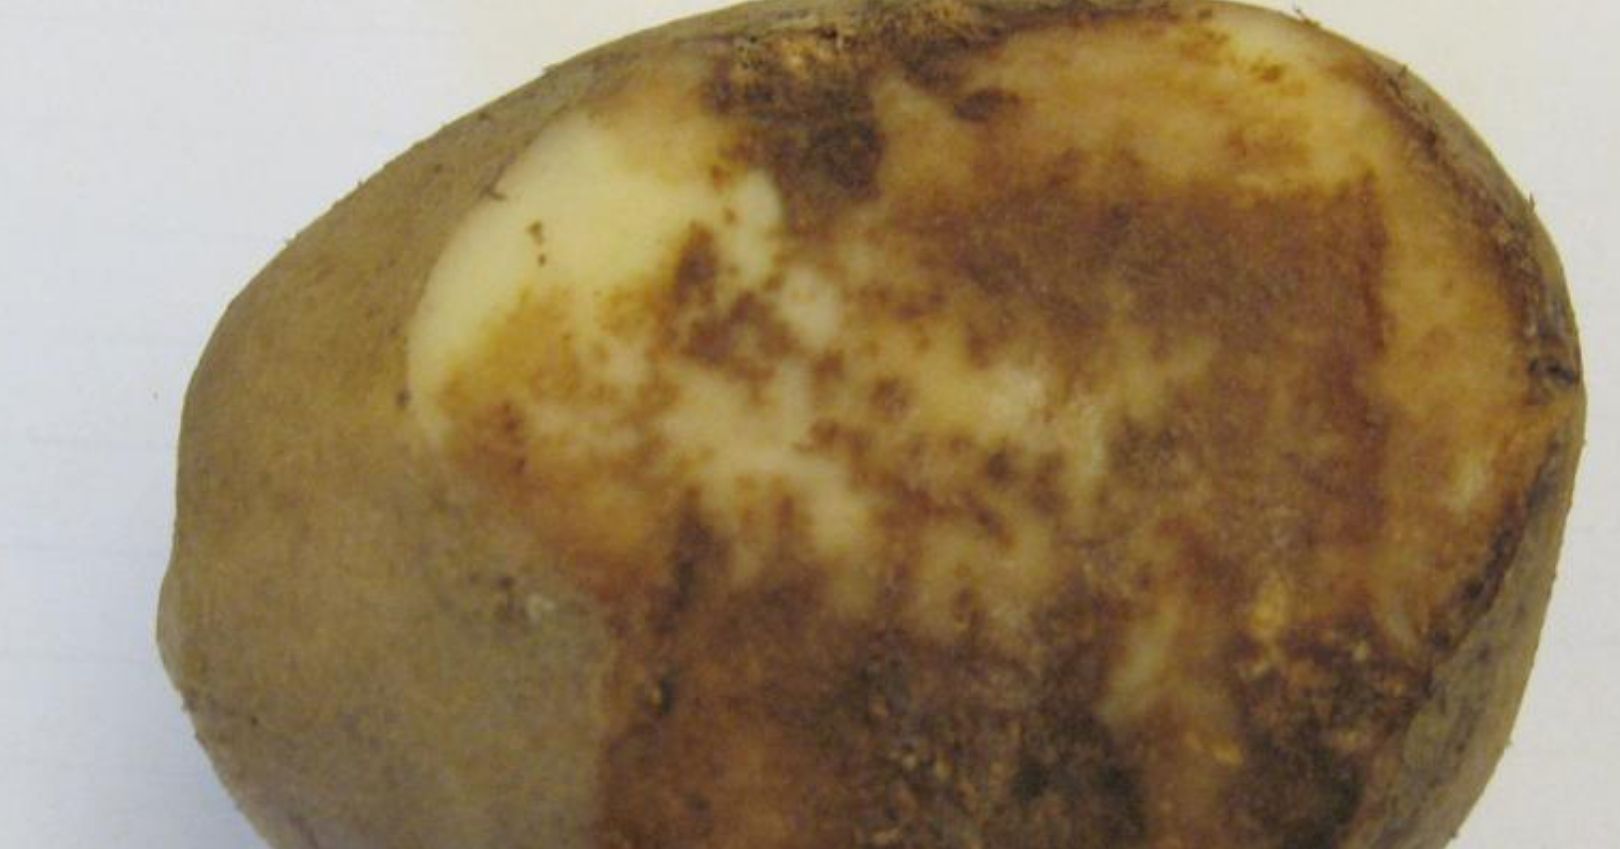 Late Blight Symptoms on Potato Tuber